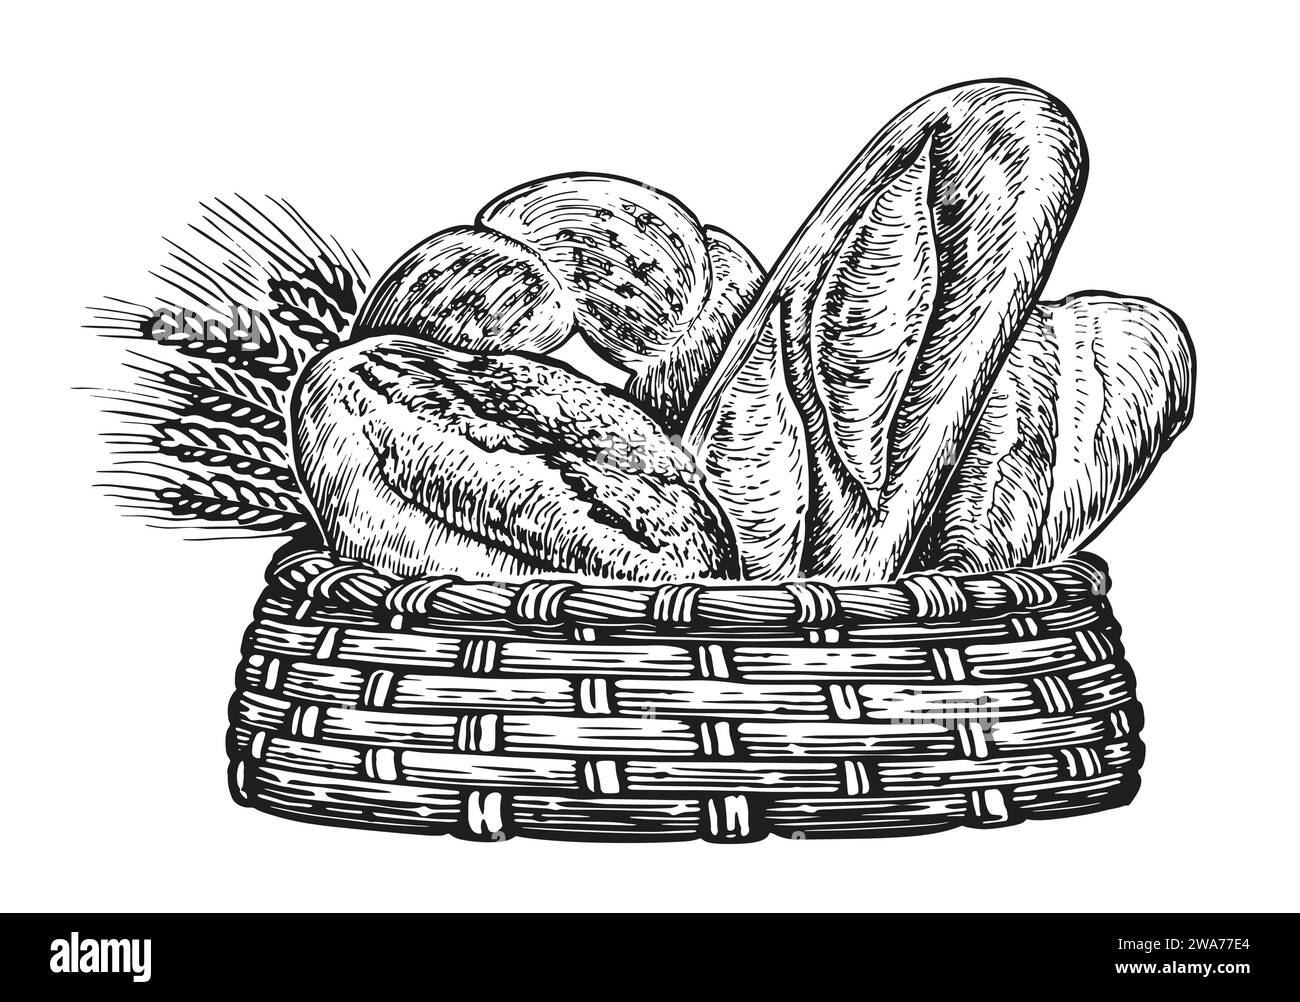 Panier avec du pain frais et du blé. Illustration pour boulangerie Illustration de Vecteur